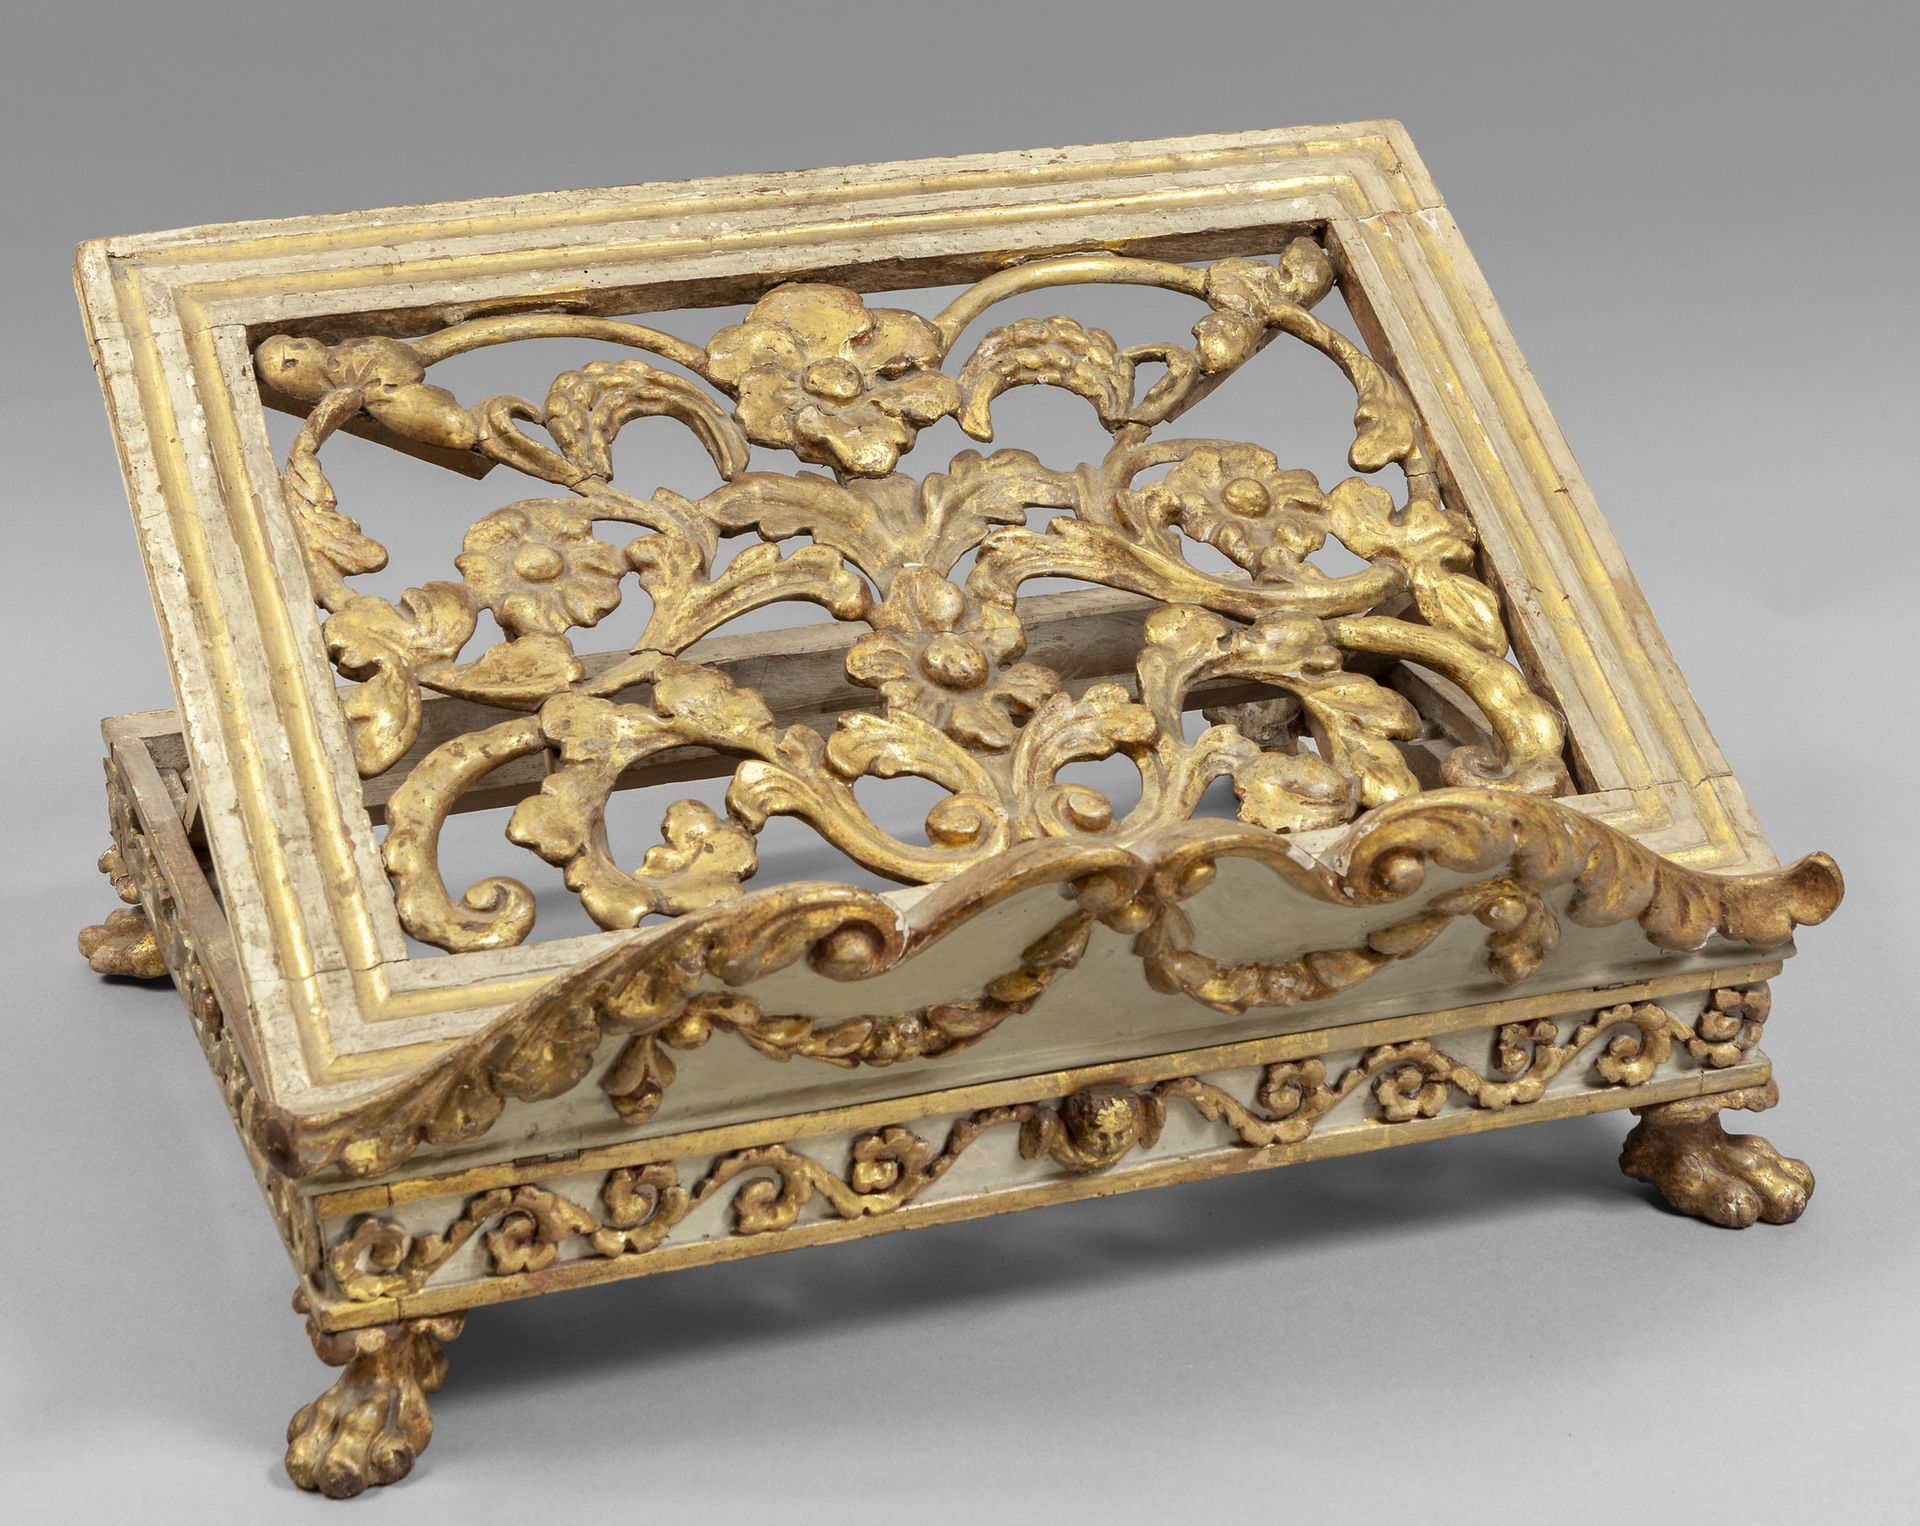 Leggio in legno finemente intagliato, dorato e 热那亚18世纪精雕细琢、镀金和涂漆的木质讲台
厘米。48x40